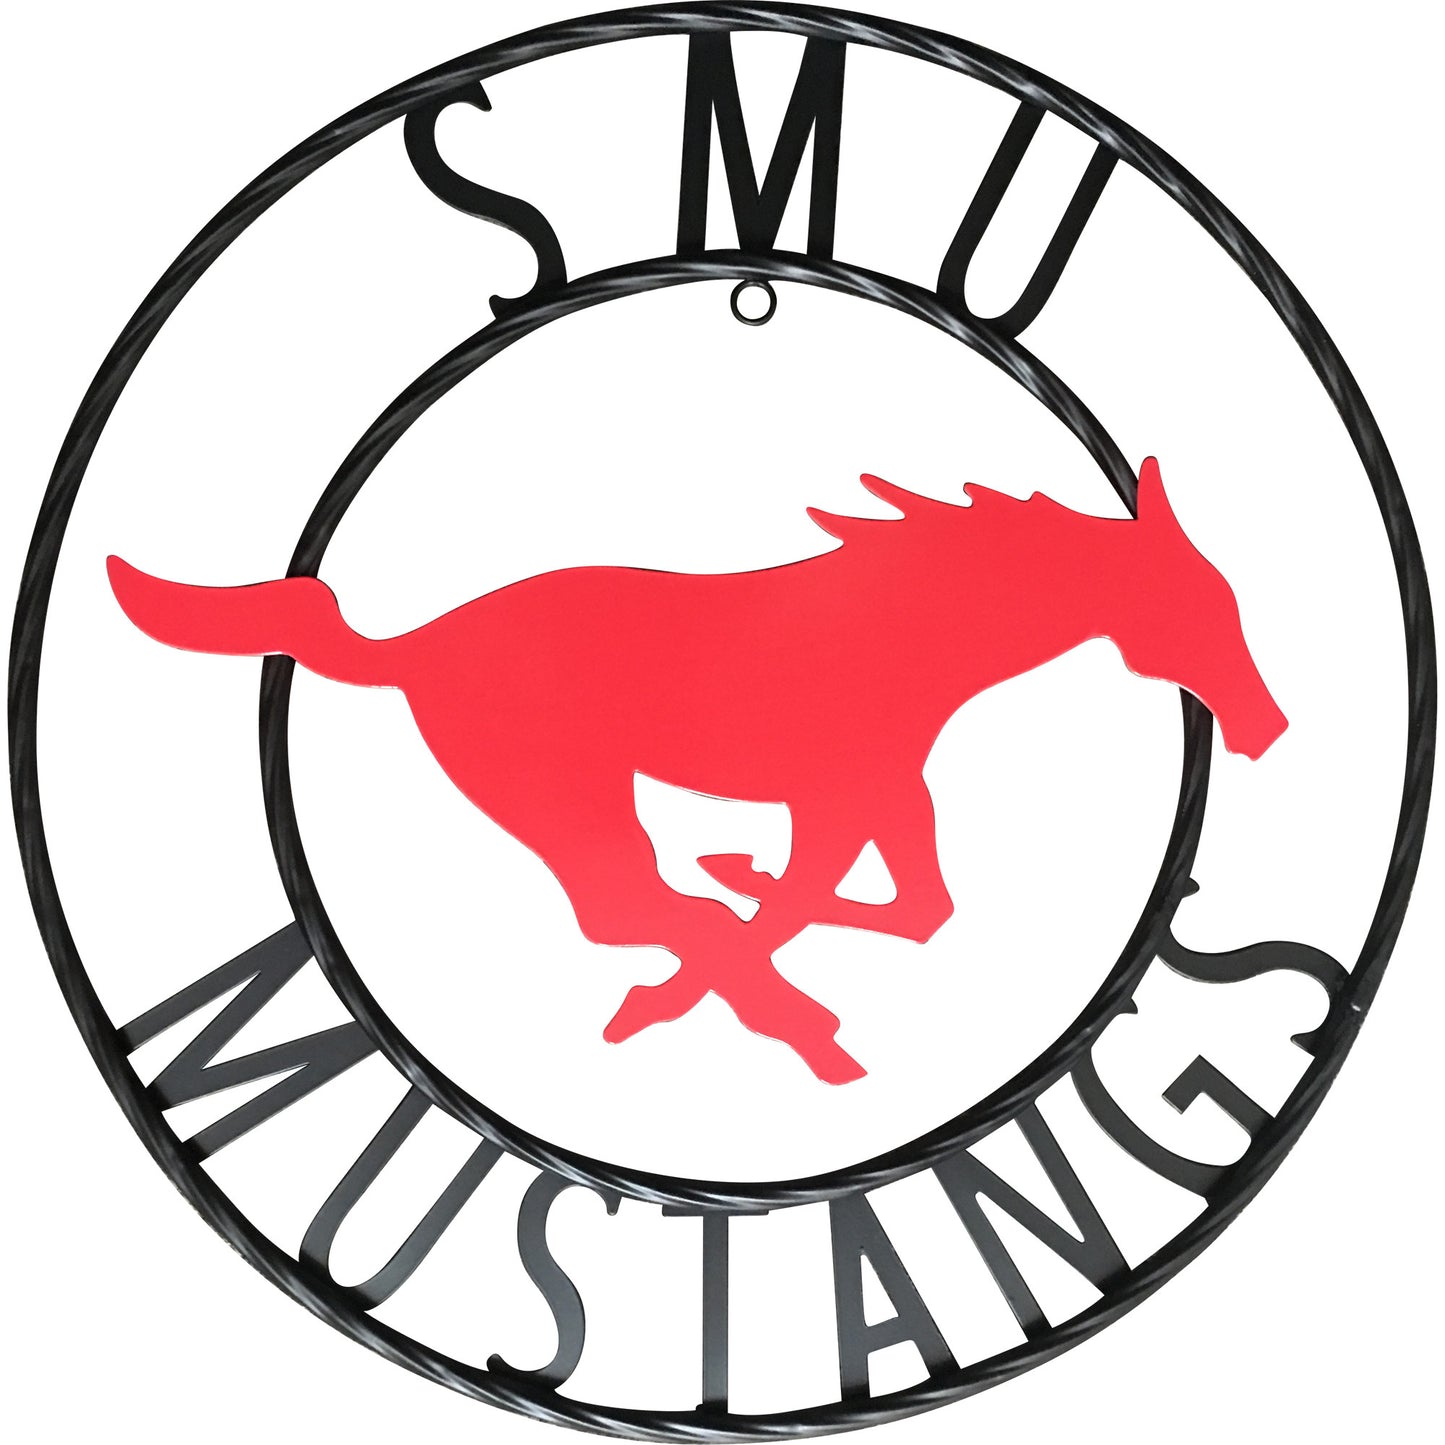 Southern Methodist University "SMU Mustangs" Wrought Iron Wall Decor